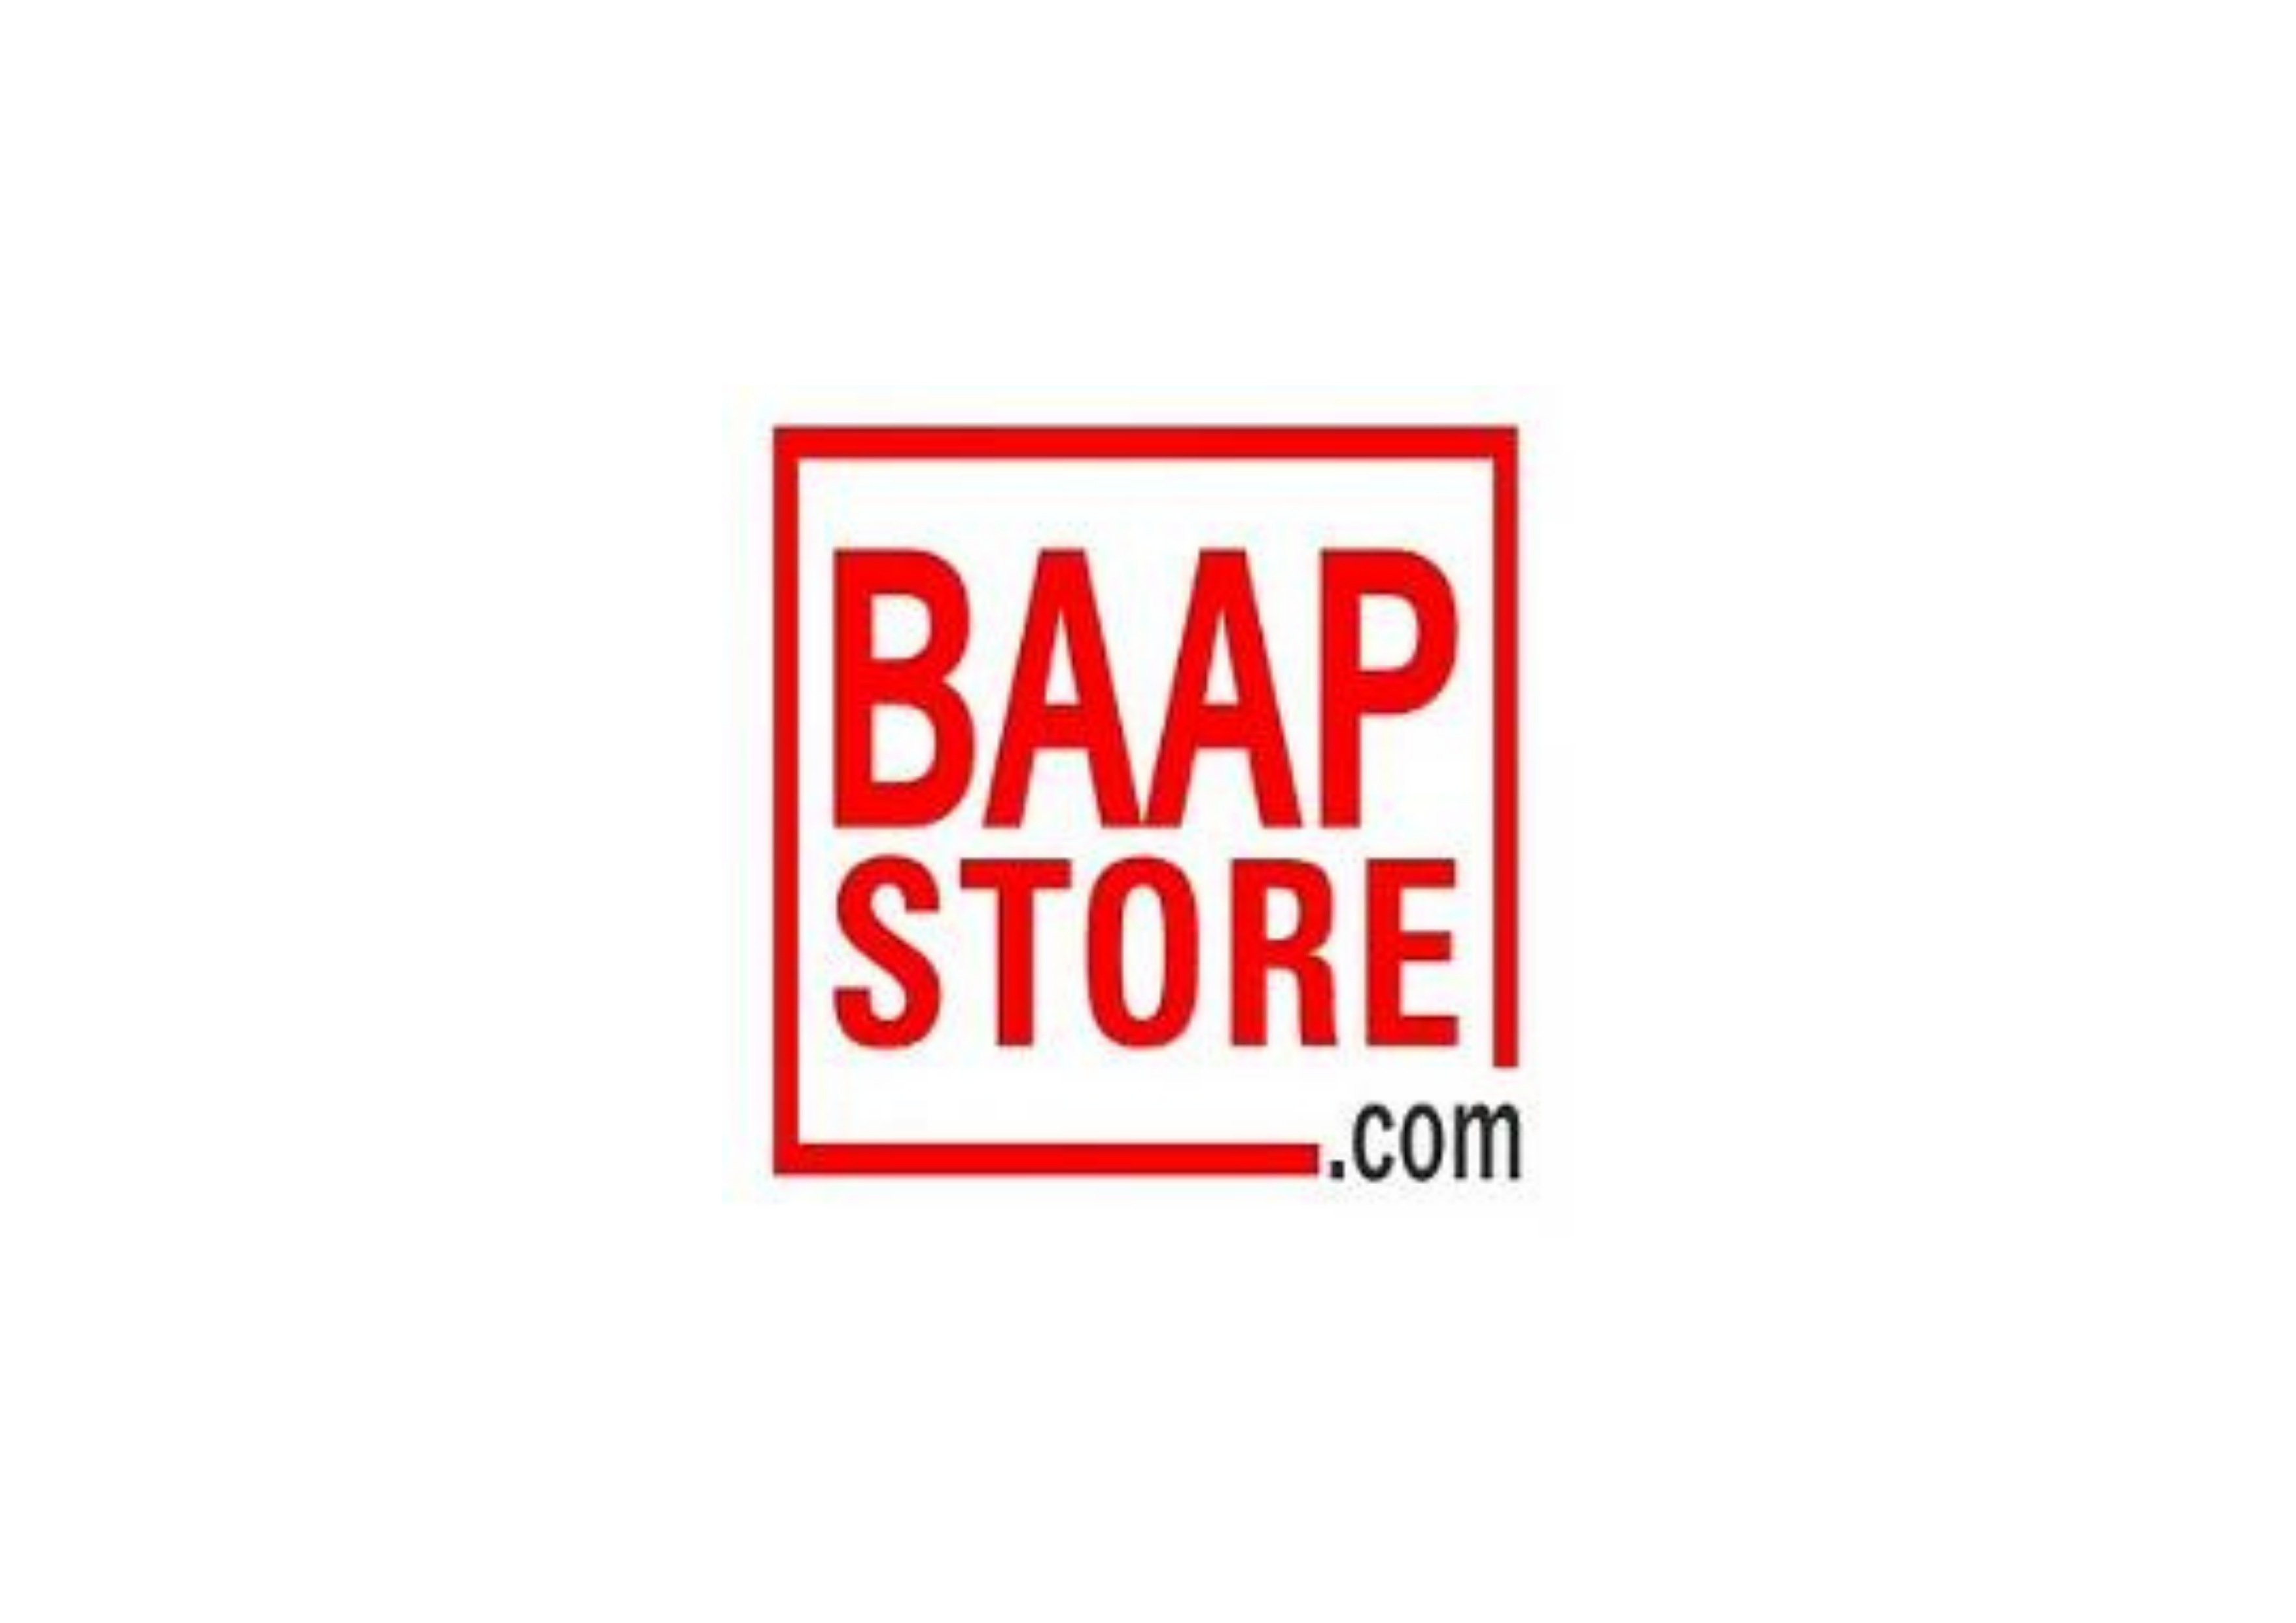 BaapStore